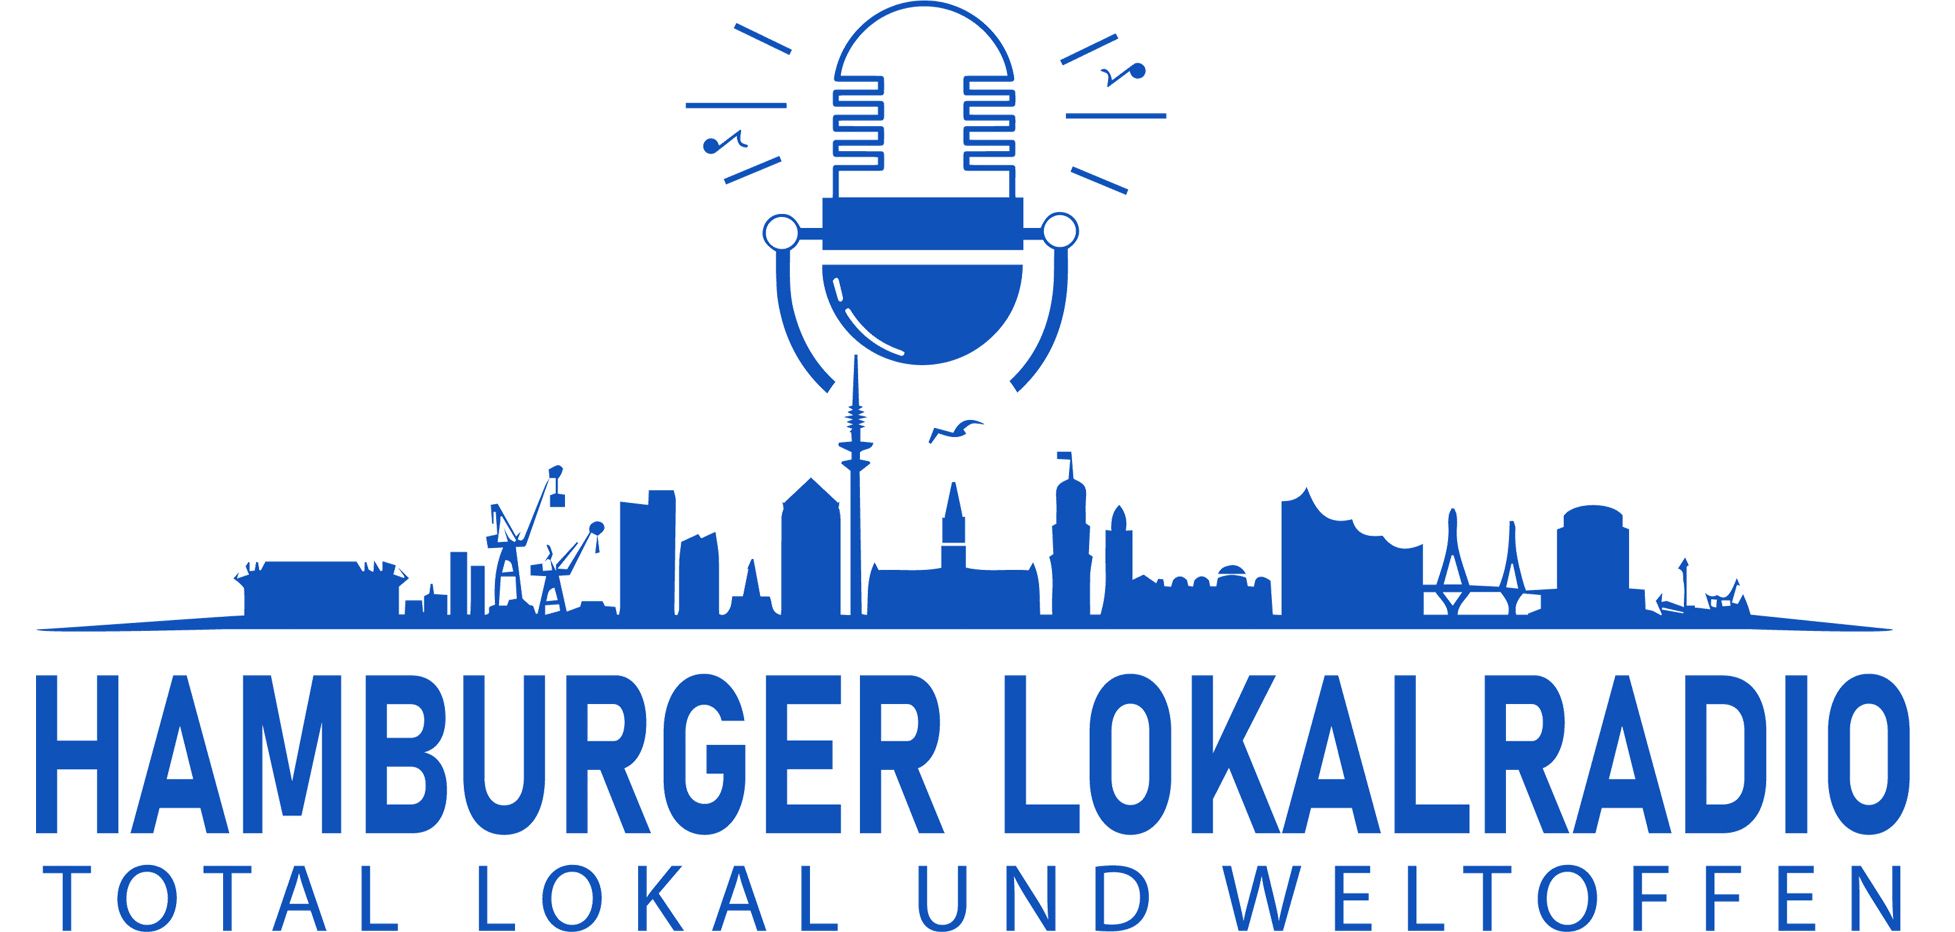 Logo Hamburger Lokalradio lokal weltoffen